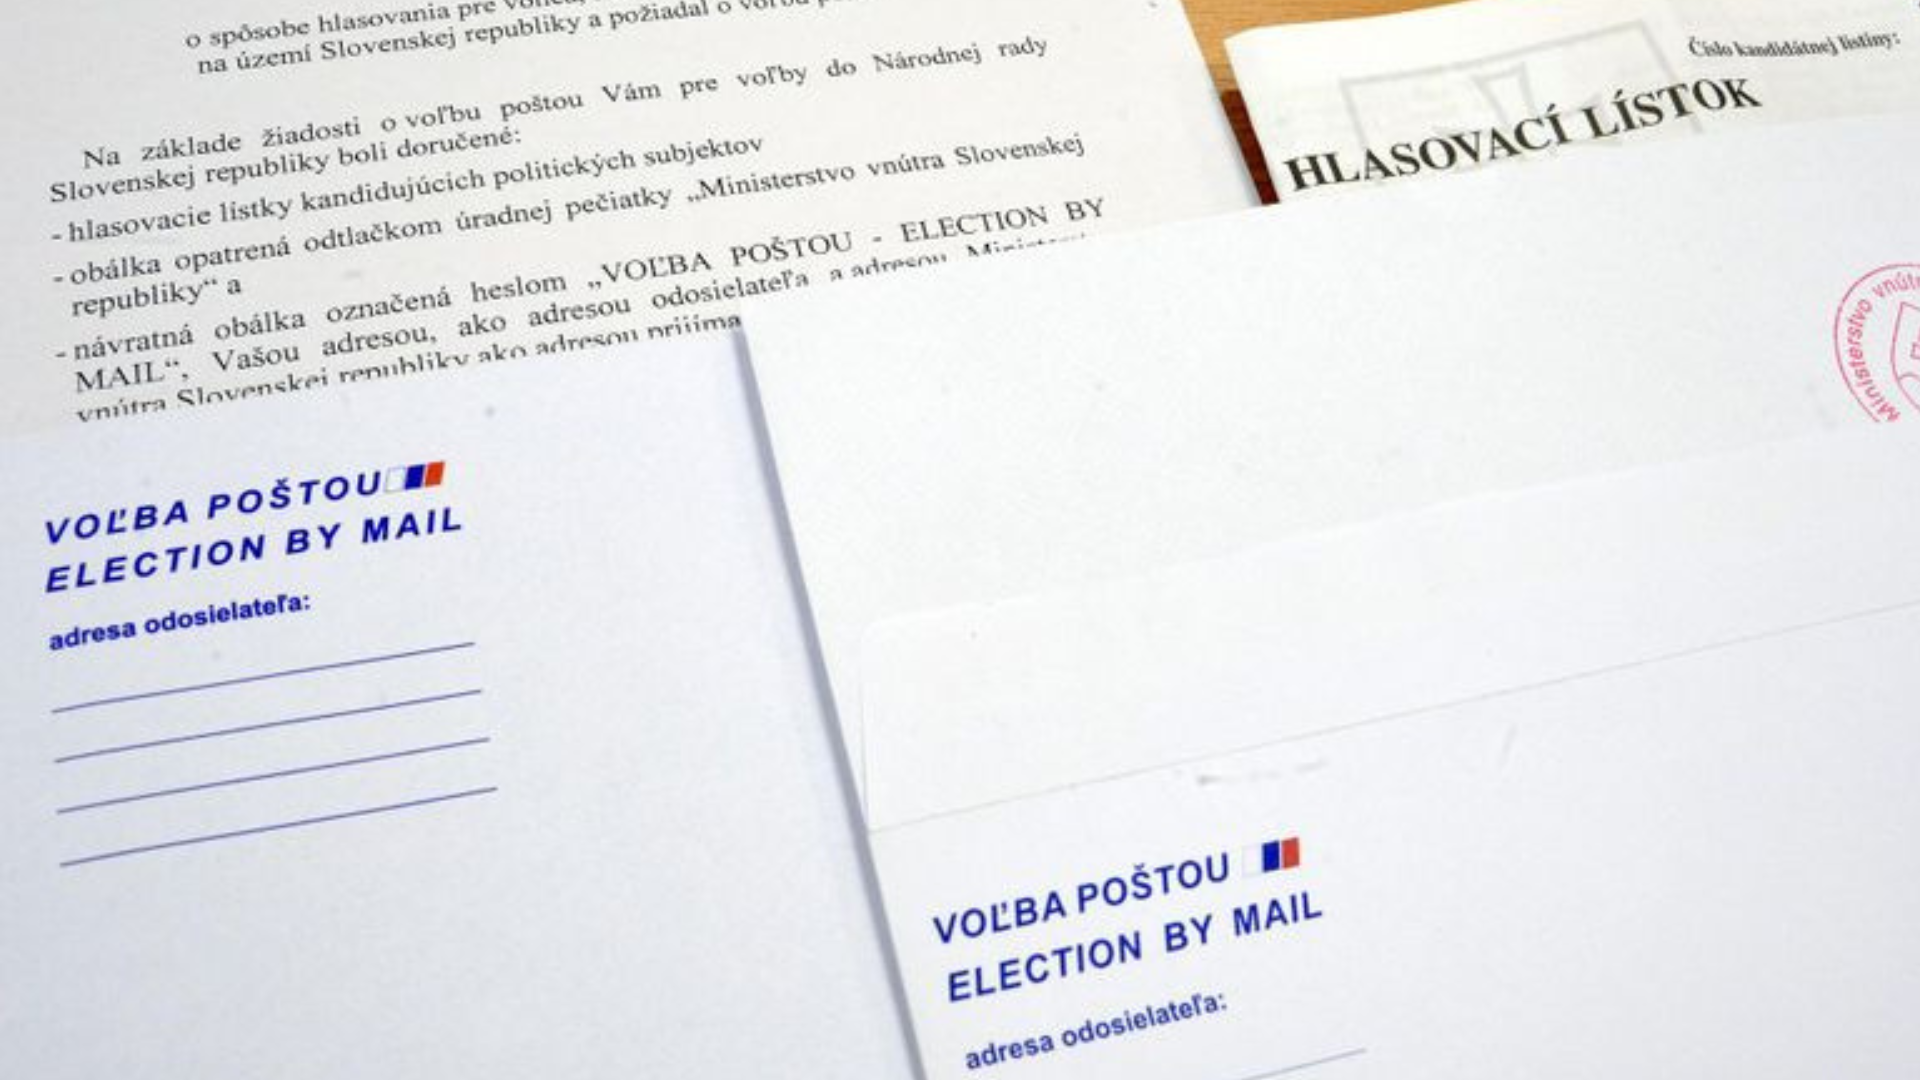 Na obrázku sú obálky a lístky pre voľbu poštou